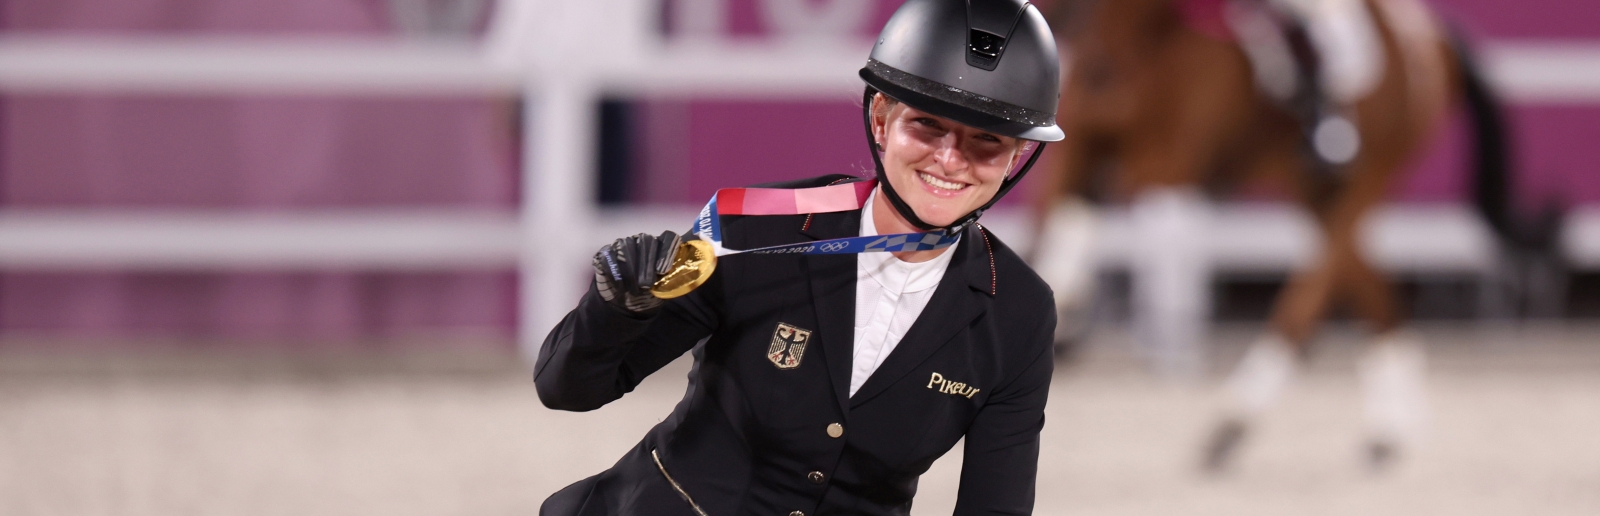 Vielseitigkeitsreiterin Julia Krajewski auf ihrem Pferd mit der Goldmedaille